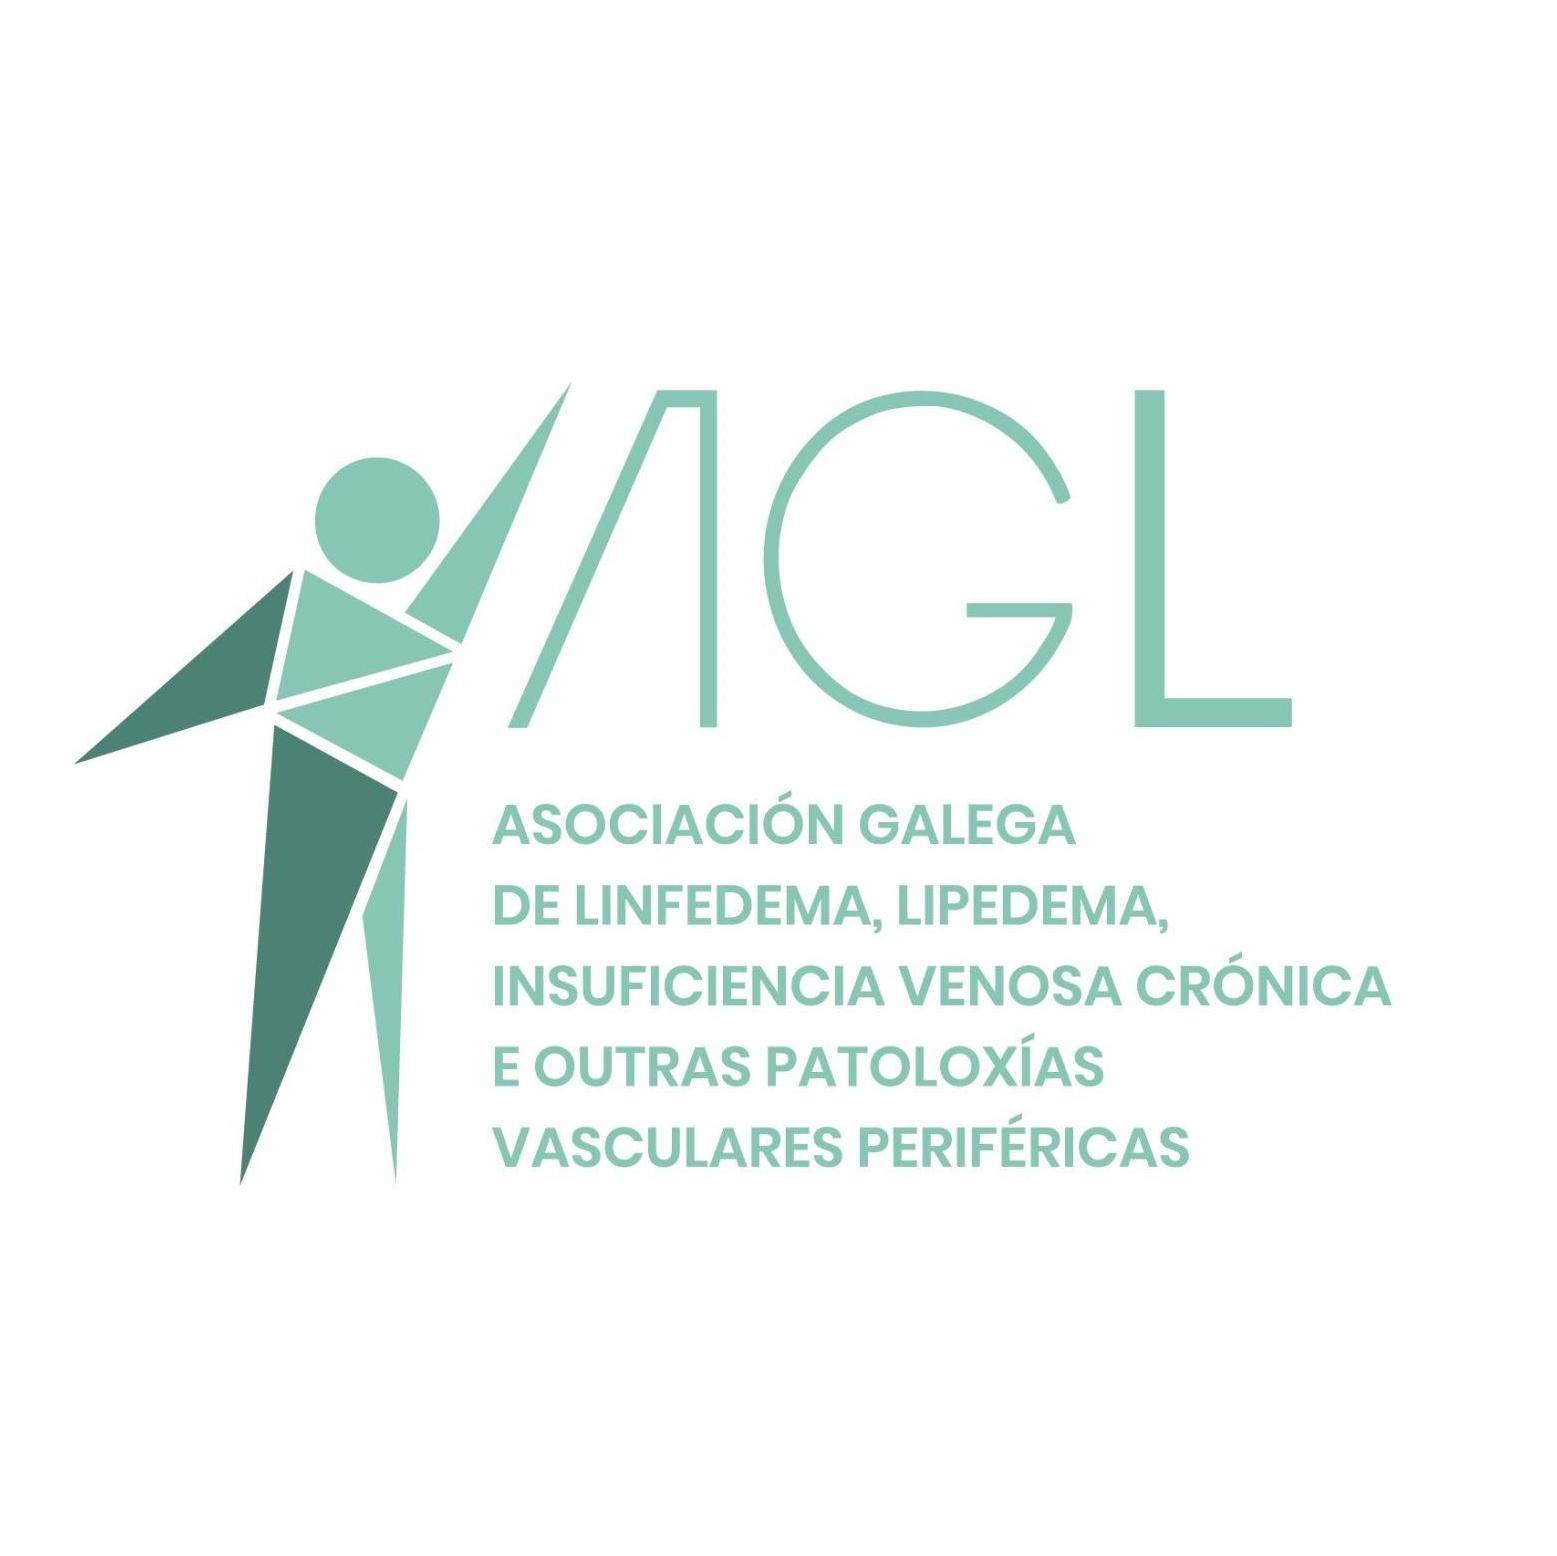 Asociación Galega de Linfedema, Lipedema, Insuficiencia Venosa Crónica - El teu perfil. Vota, valora i comunica’t